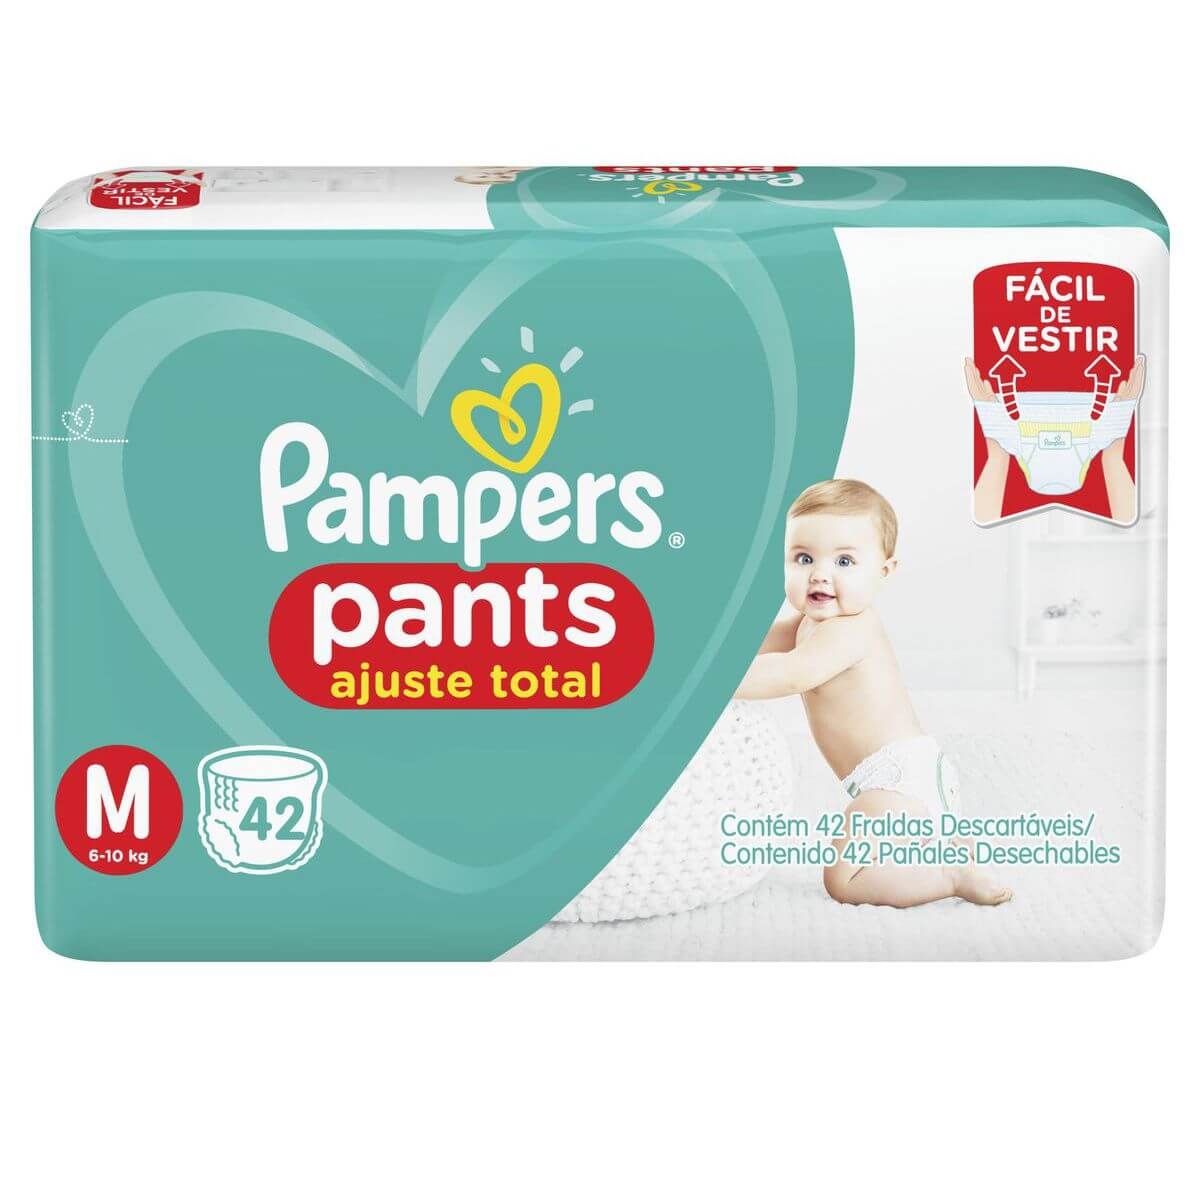 Fralda Pampers Pants Ajuste Total M 60 unidades - Melhor preço